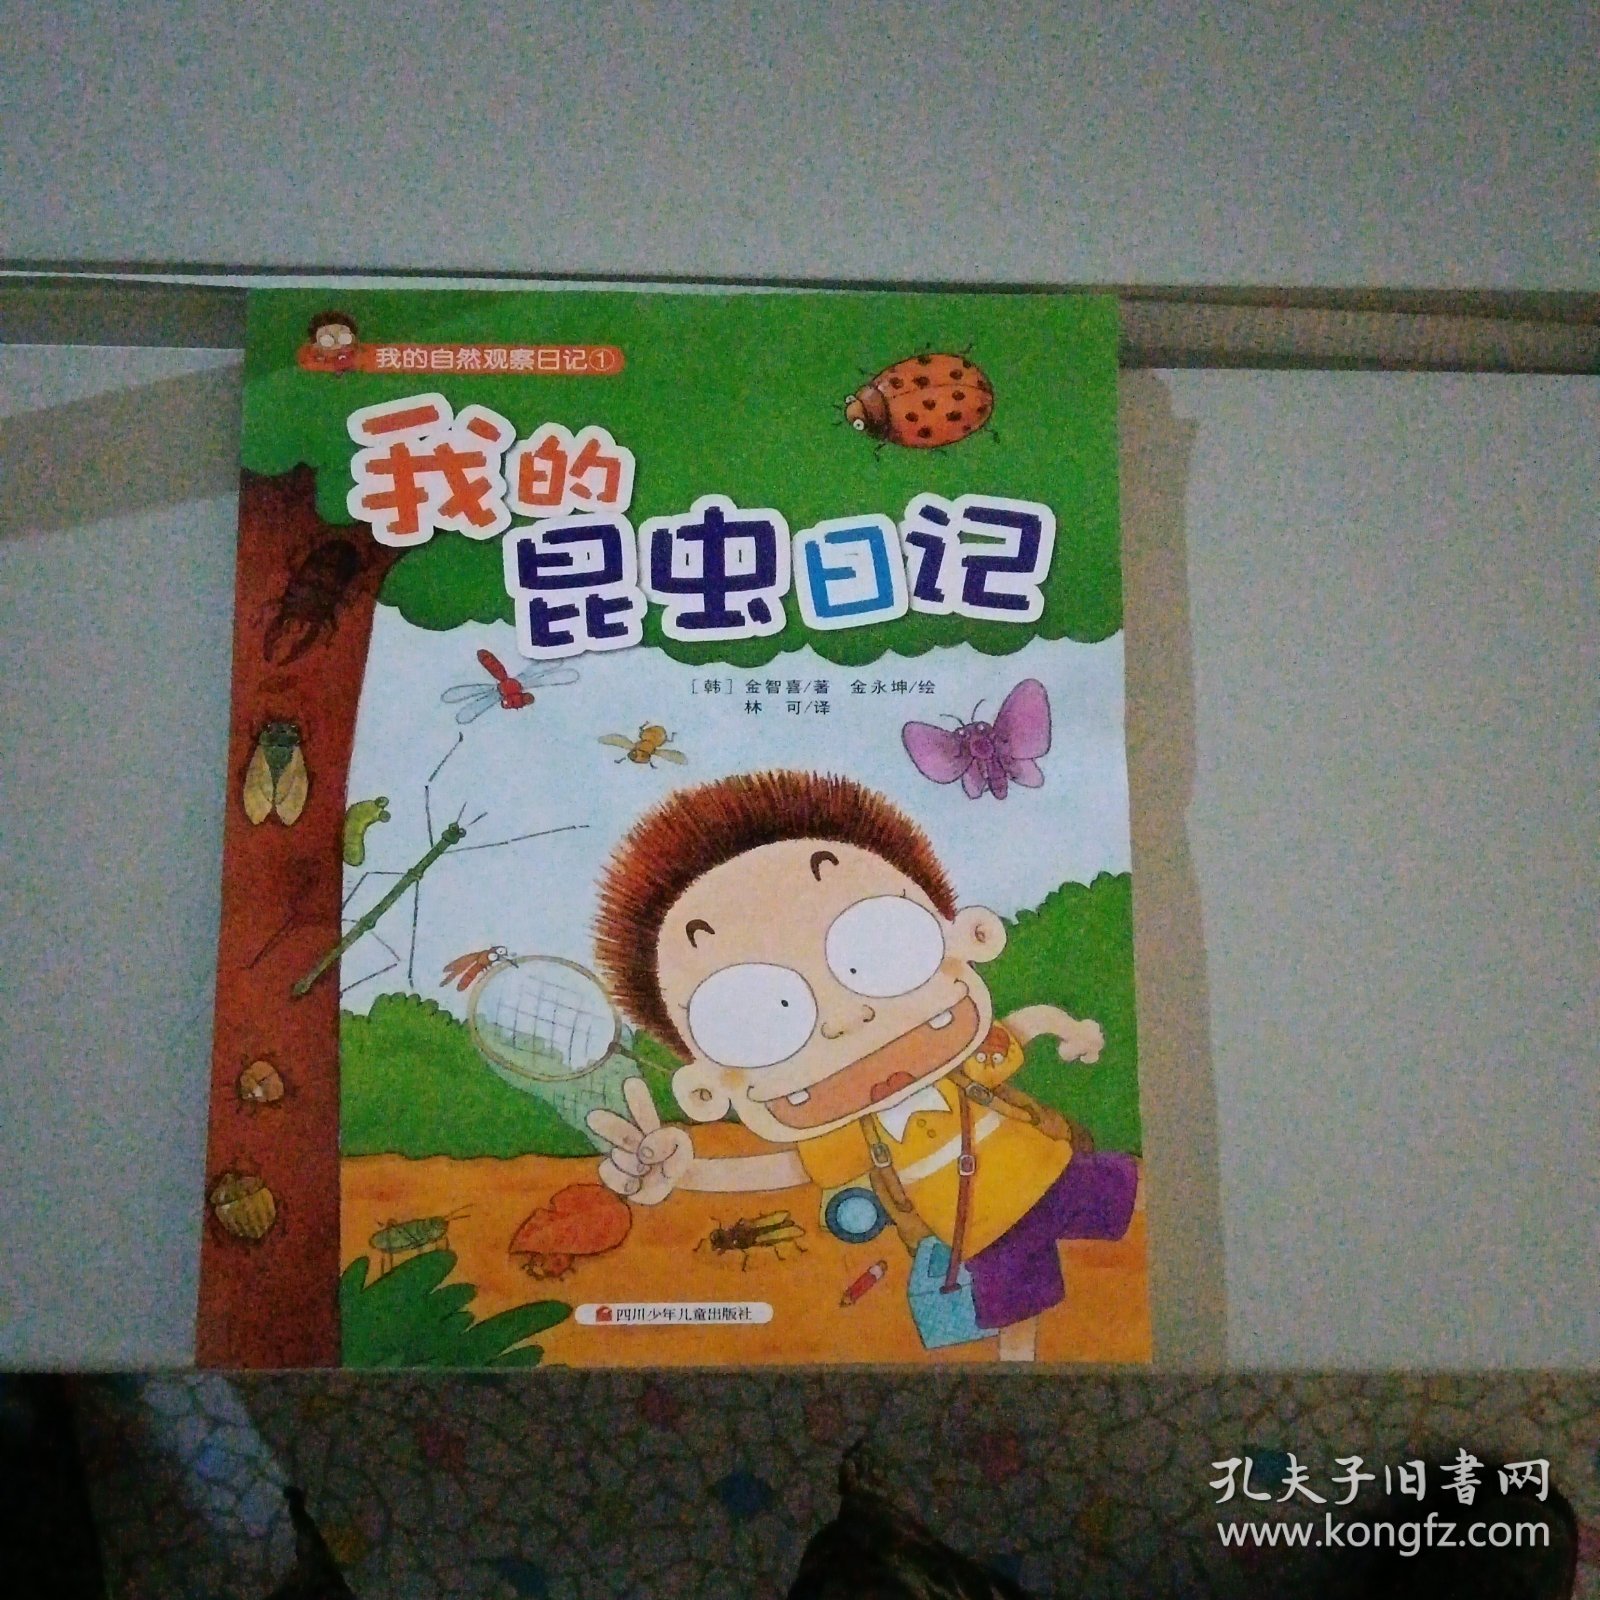 我的昆虫日记——（畅销韩国的儿童科普读物！有趣的观察日记，奇妙的大自然之旅，培养孩子的好奇心、想象力，拉近童心与大自然的距离！）